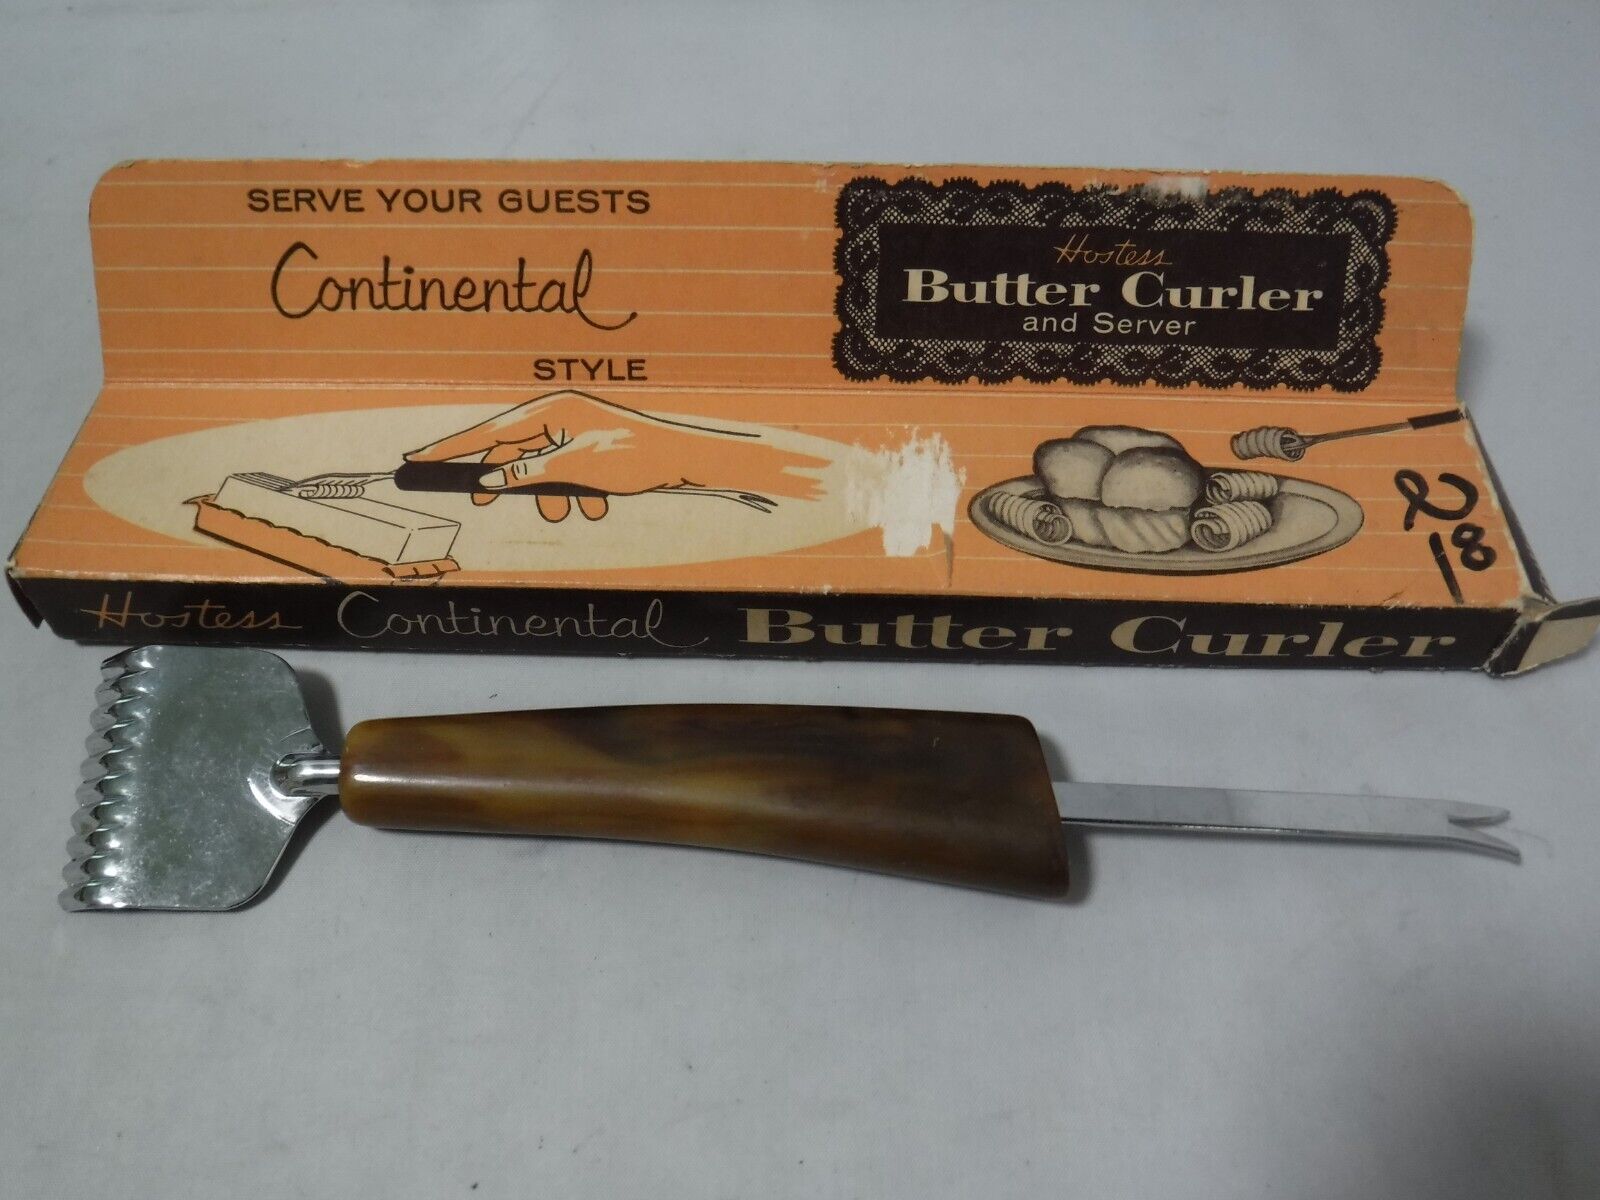 ga5 VTG Hostess Continental Style Butter Curler 1960's Bakelite Handle RARE